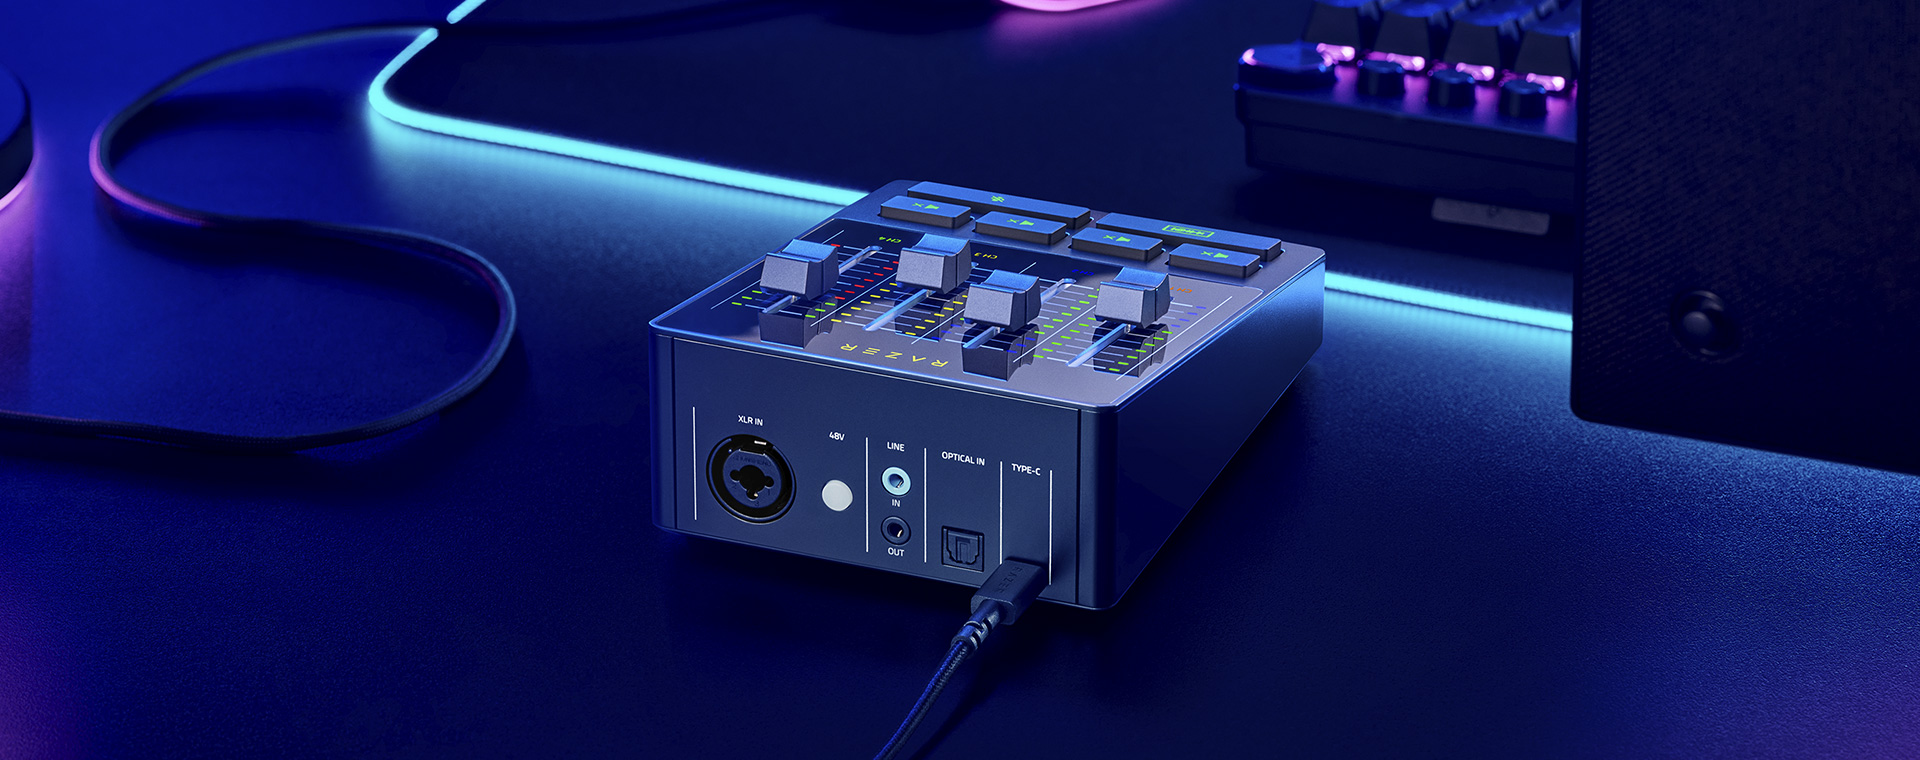 Razer ra mắt loạt phụ kiện streaming đem đến hình ảnh và âm thanh chất lượng hơn cho người dùng